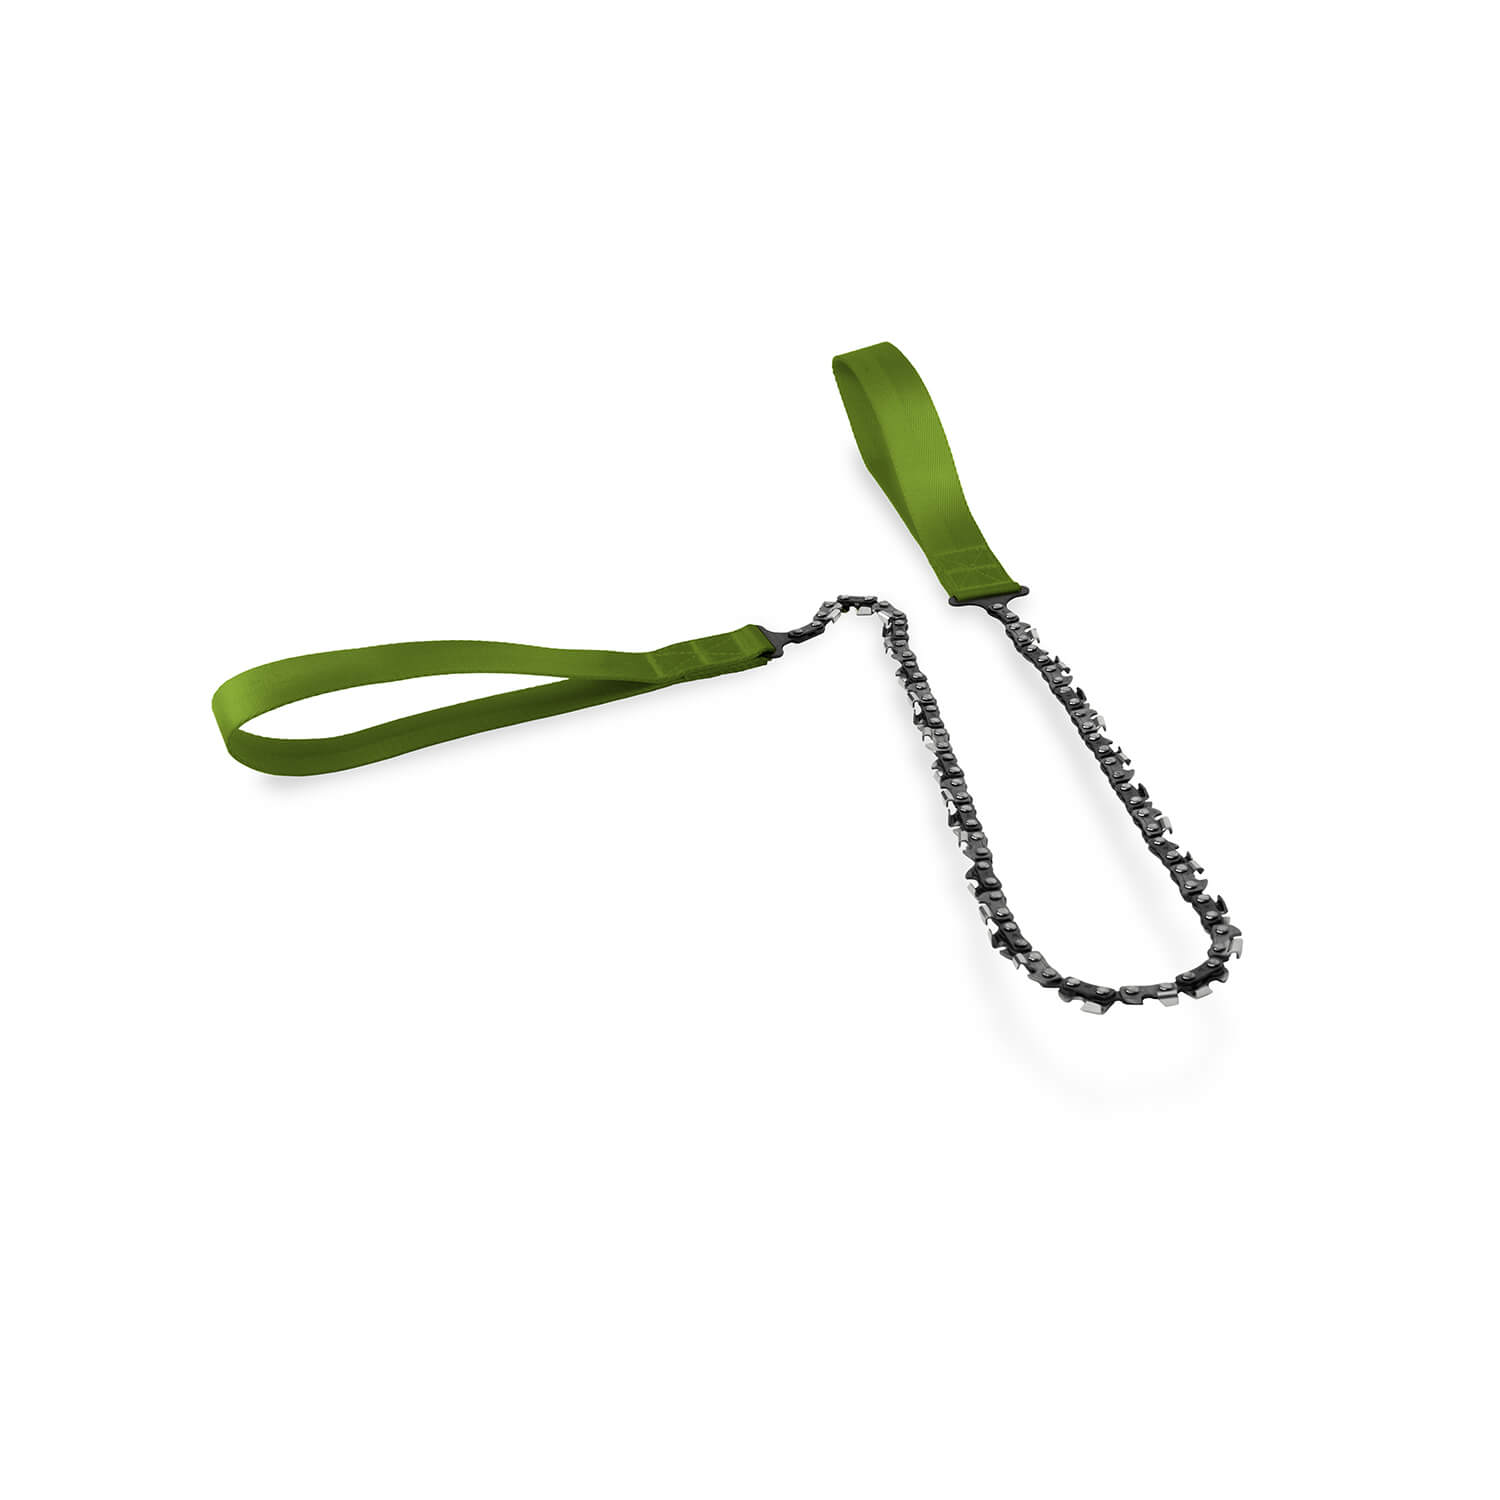 Nordic Taschen-Kettensäge Lang (Grün) - Revierarbeit & Werkzeug